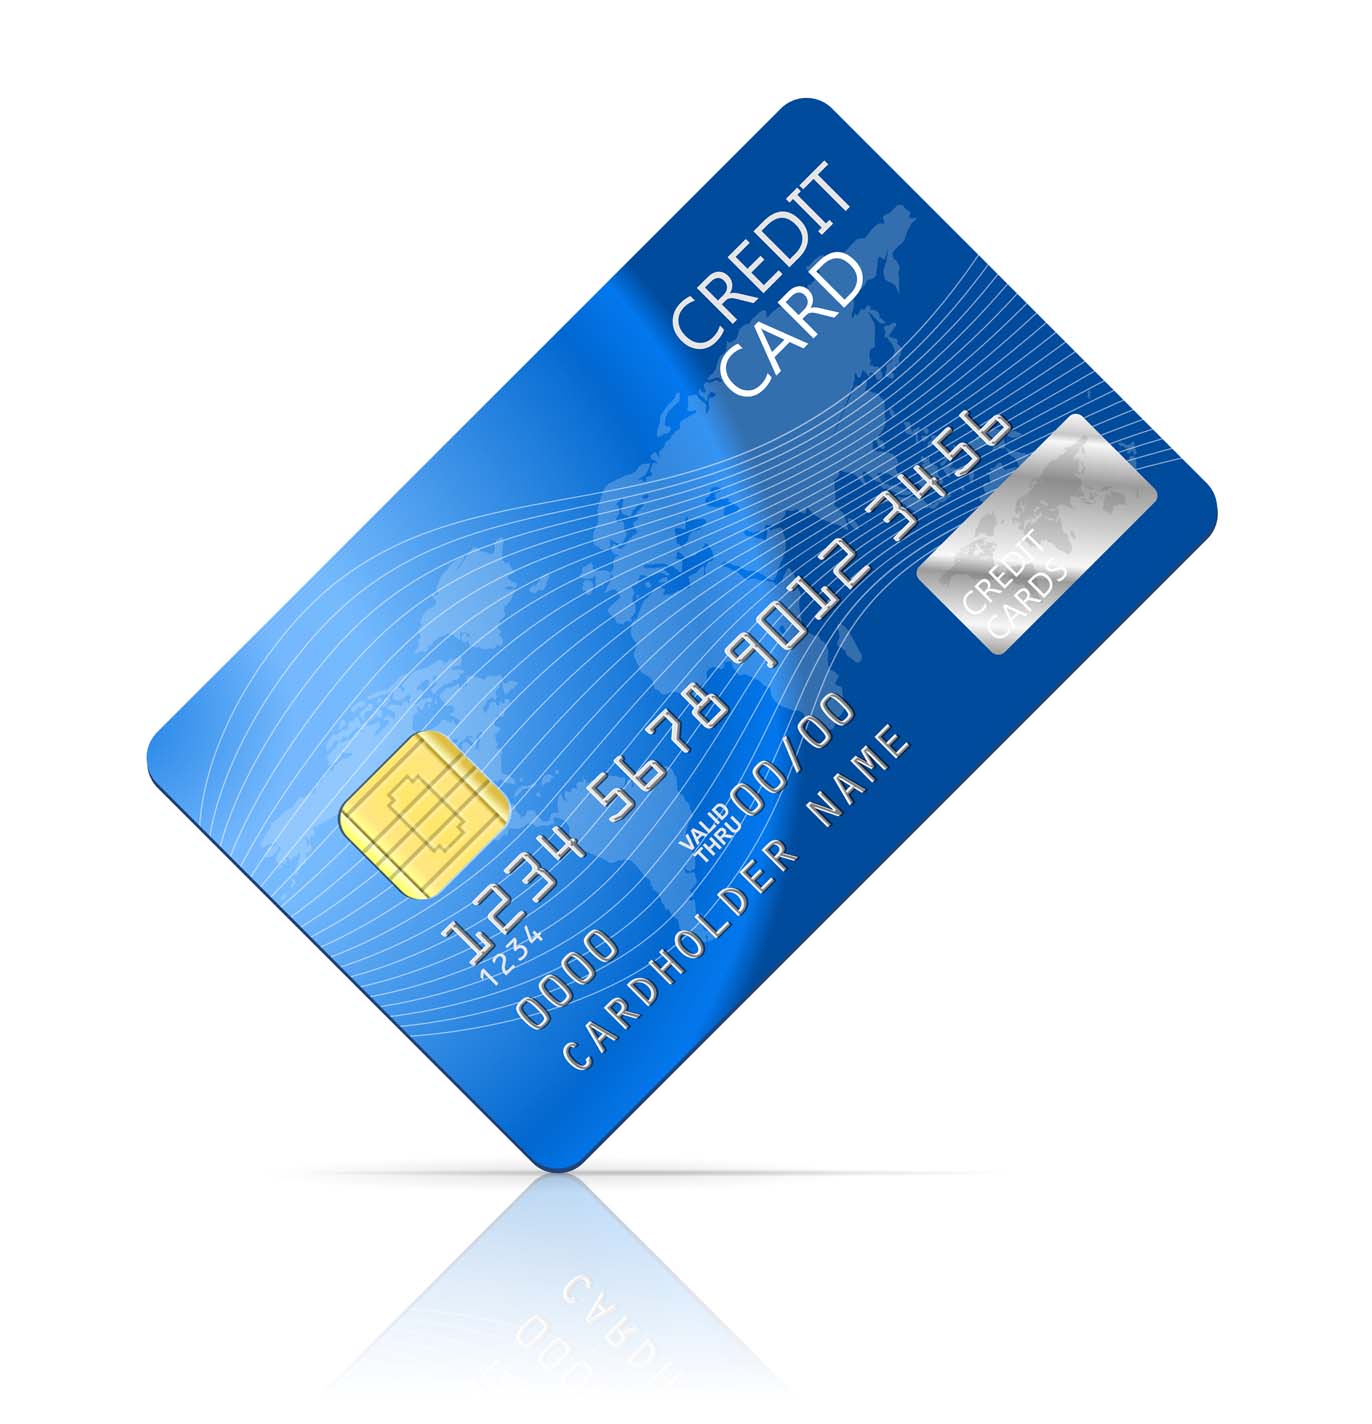 Khách hàng phải chứng minh thu nhập nếu muốn phát hành thẻ VISA Credit